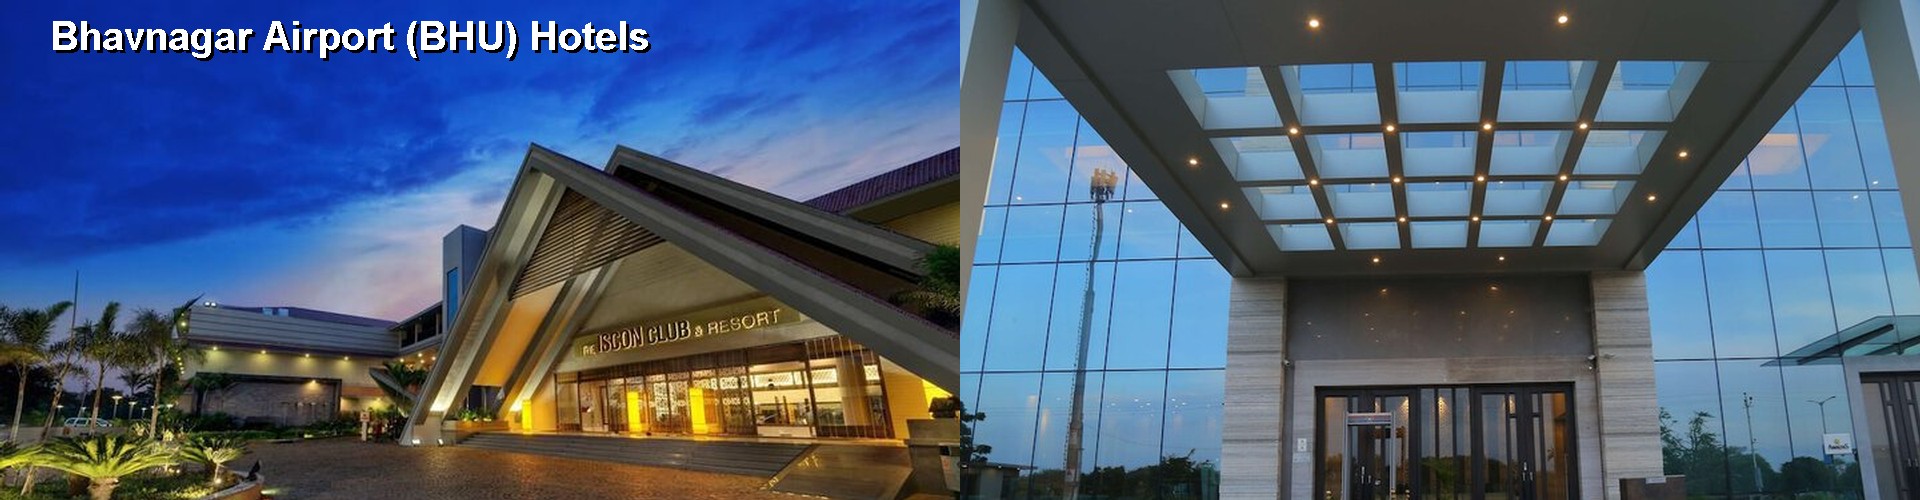 2 Best Hotels near Bhavnagar Airport (BHU)